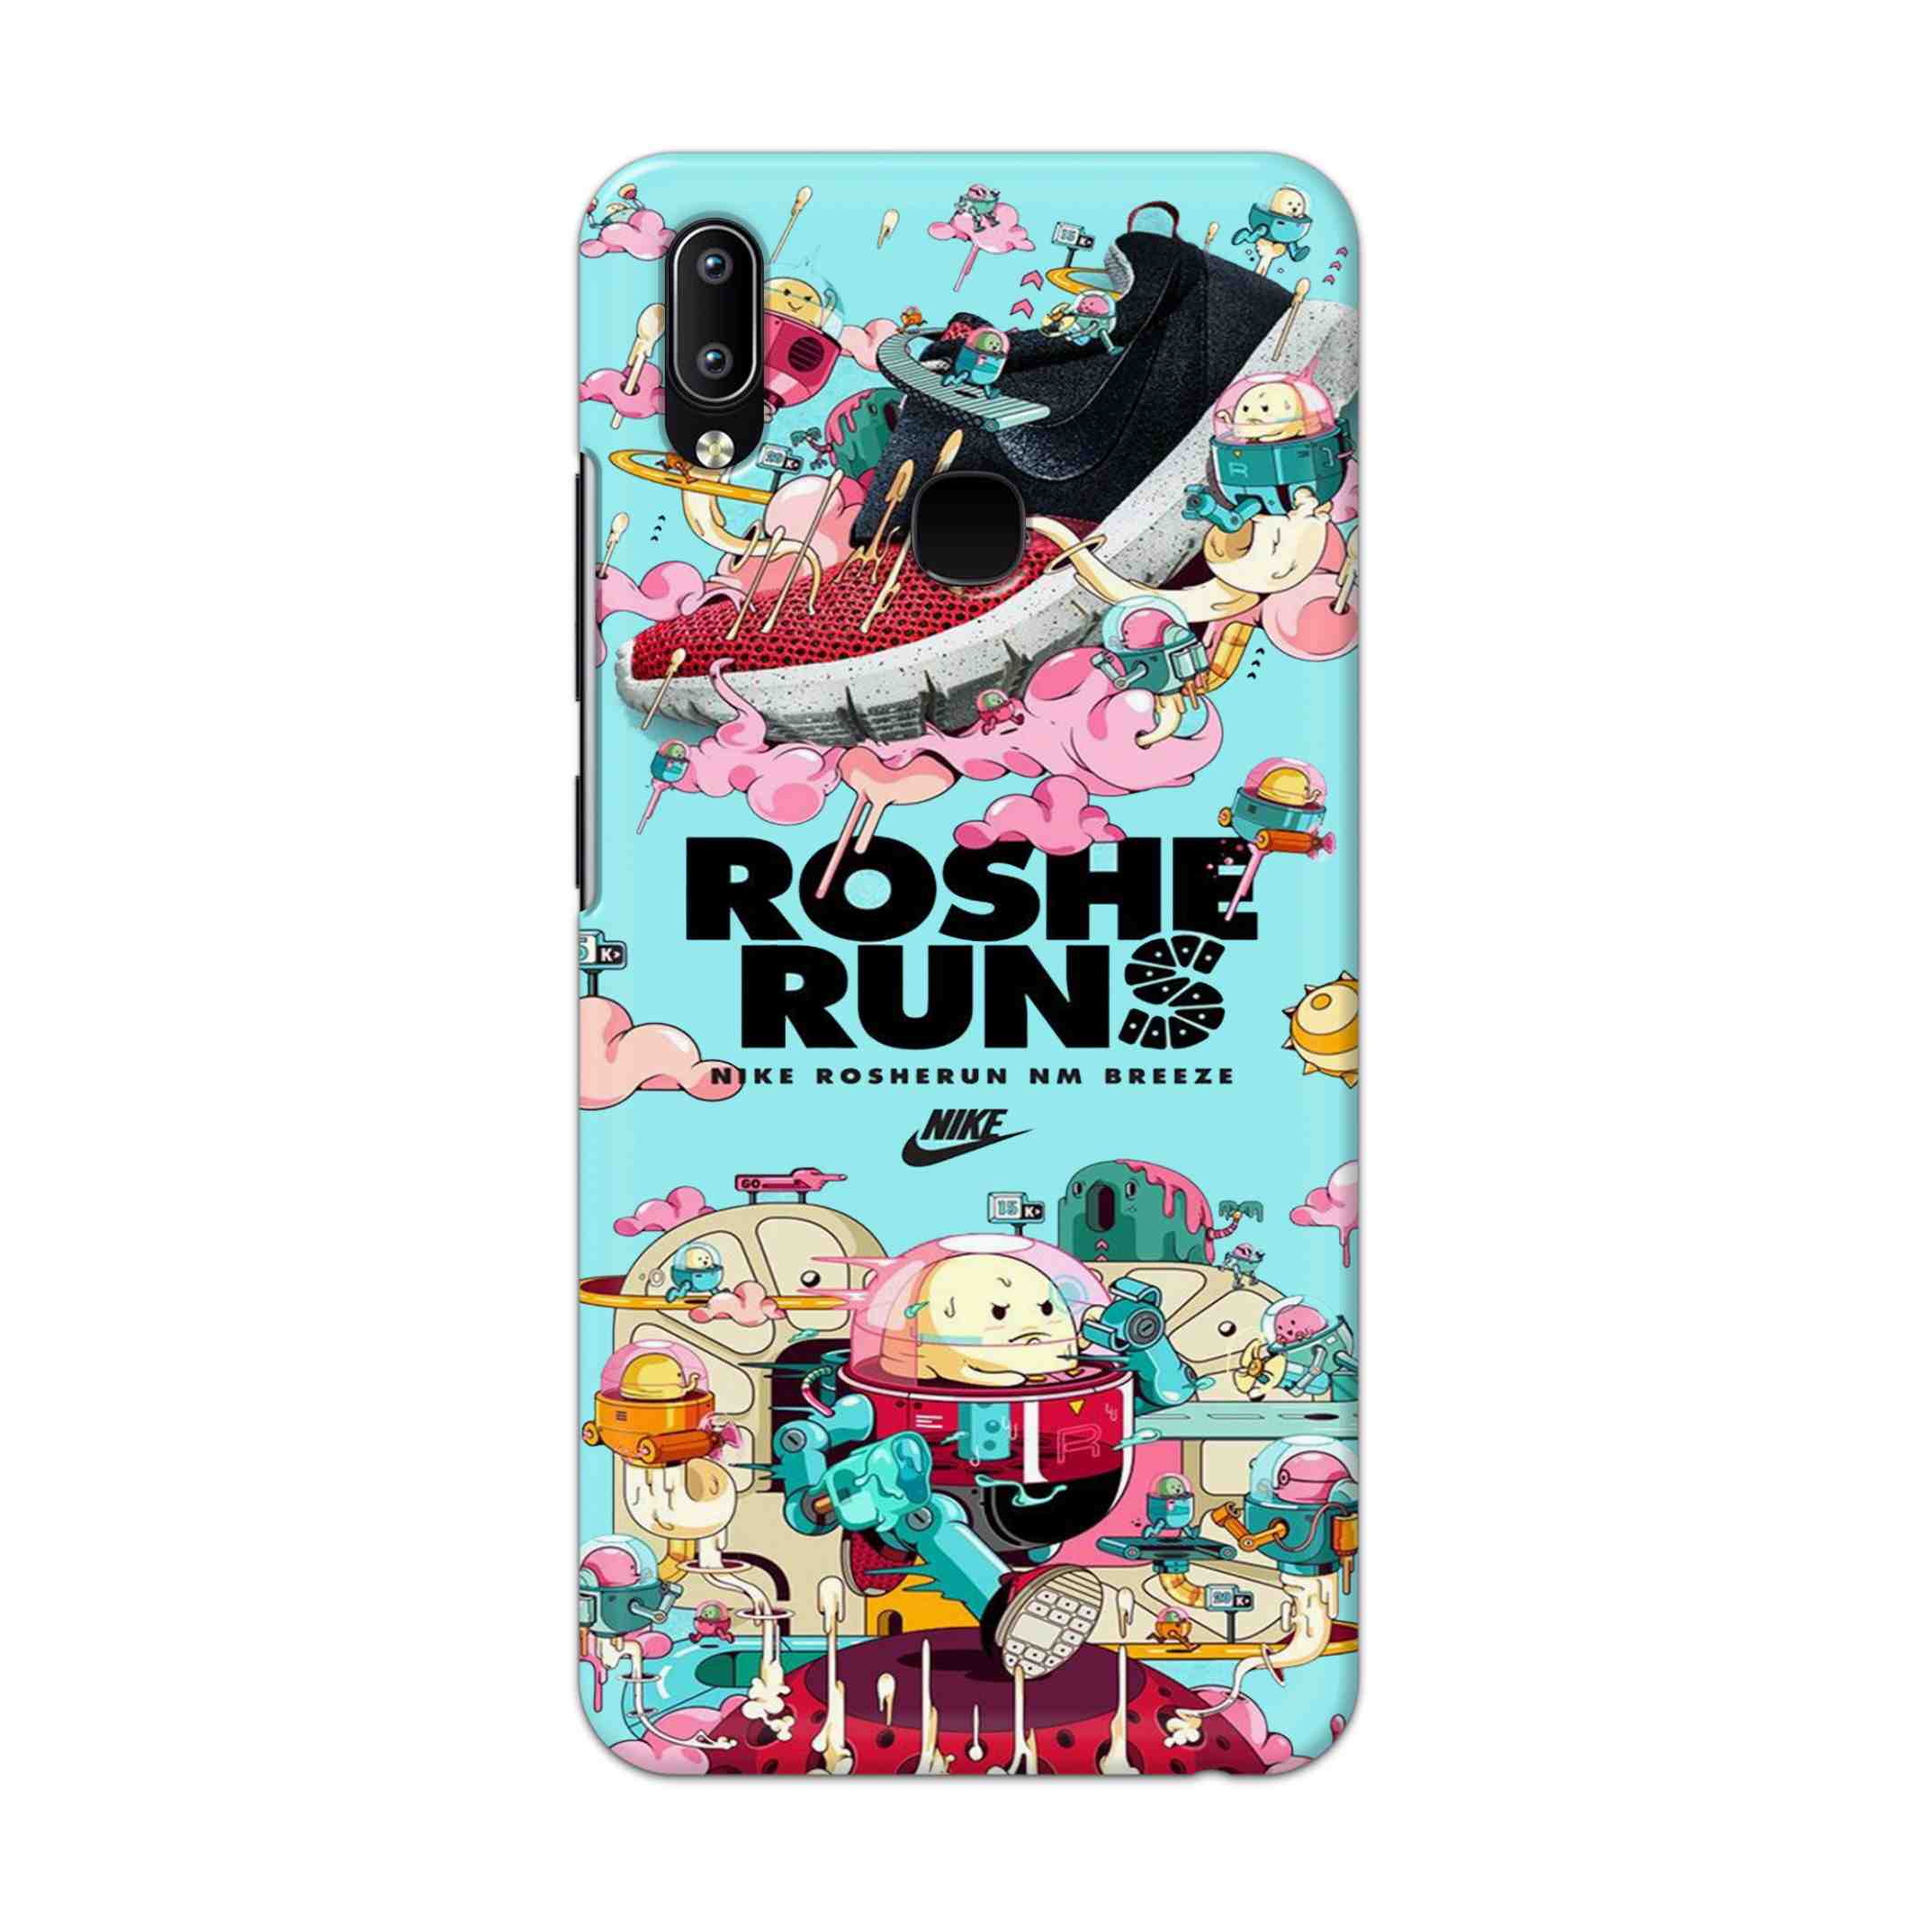 Buy Roshe Runs Hard Back Mobile Phone Case Cover For Vivo Y95 / Y93 / Y91 Online